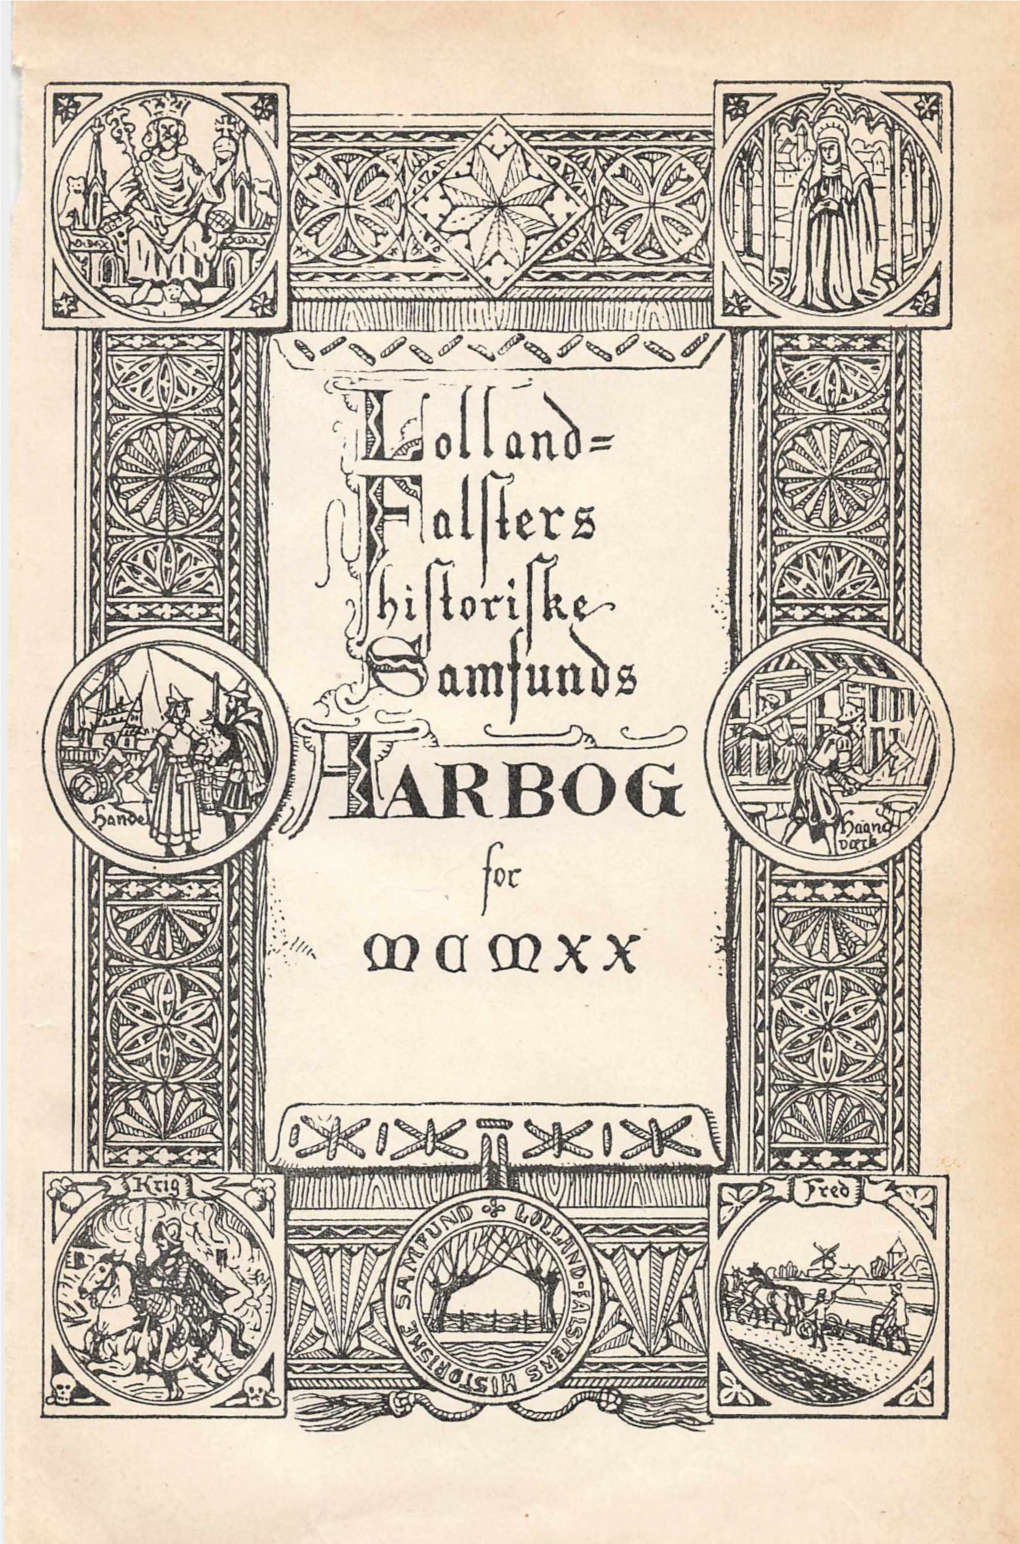 Lolland-Falsters Aarbog 1920